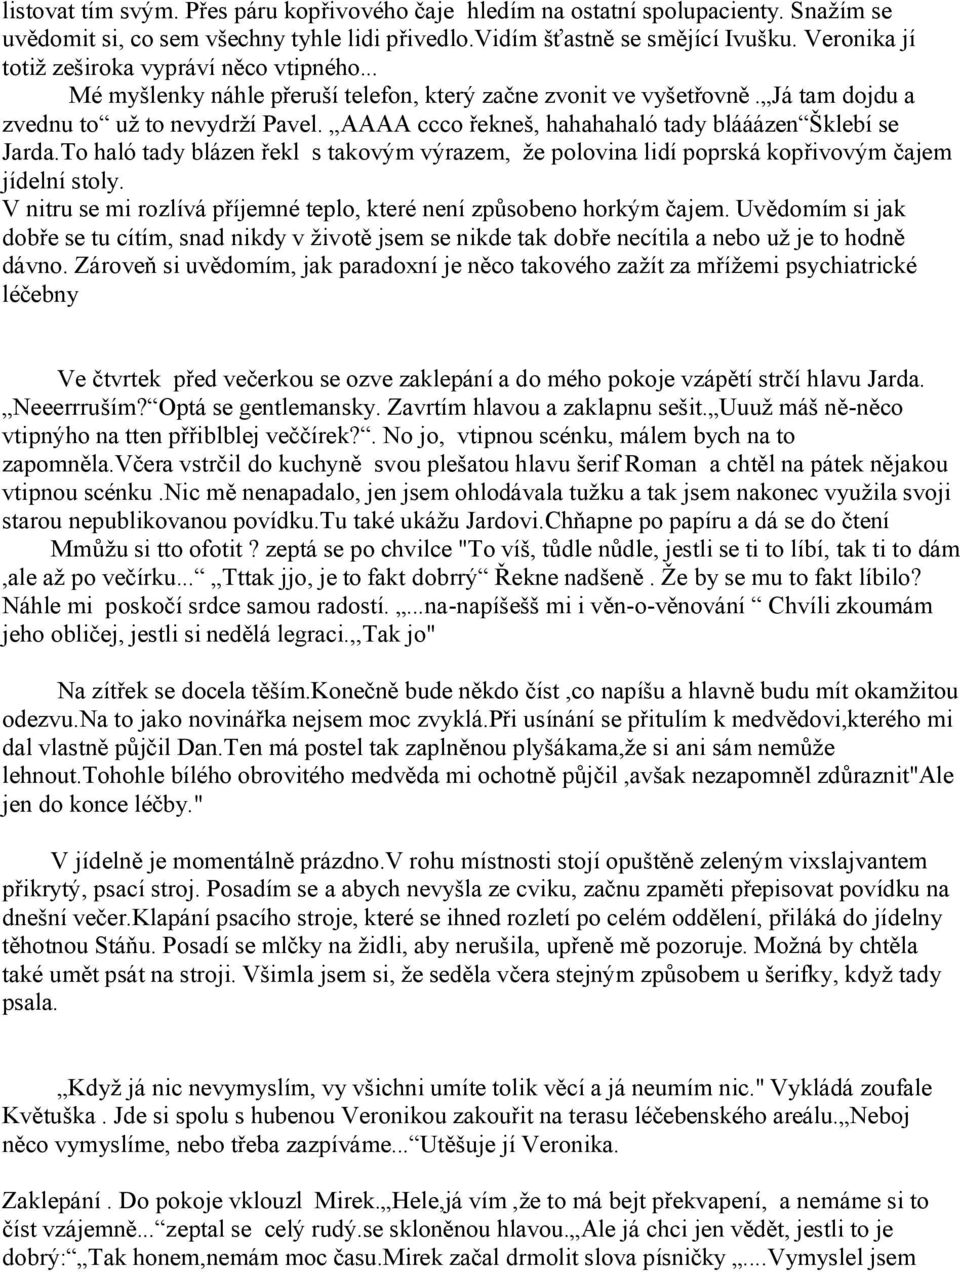 Opraváři pomatených duší. - PDF Stažení zdarma